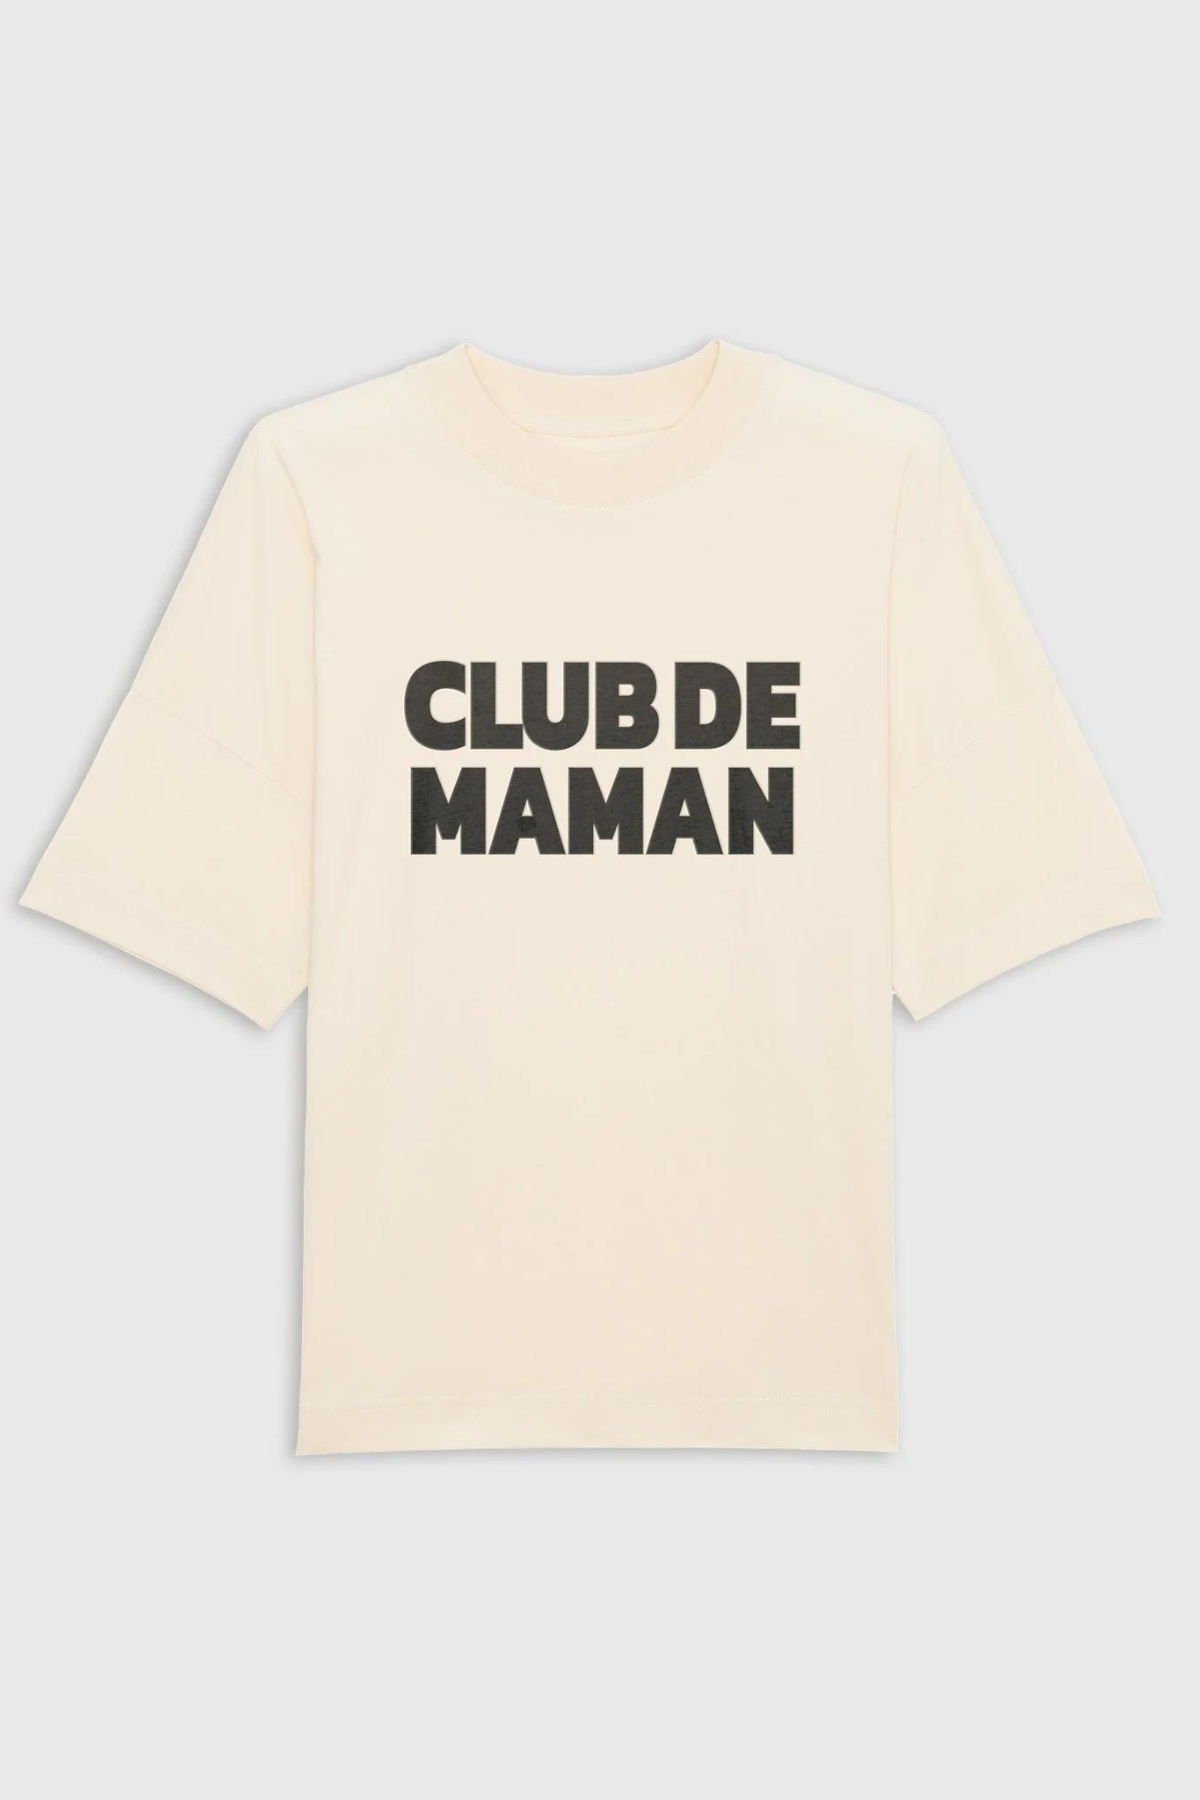 T-Shirt "Club de Maman" - Natur - SYNCSON 